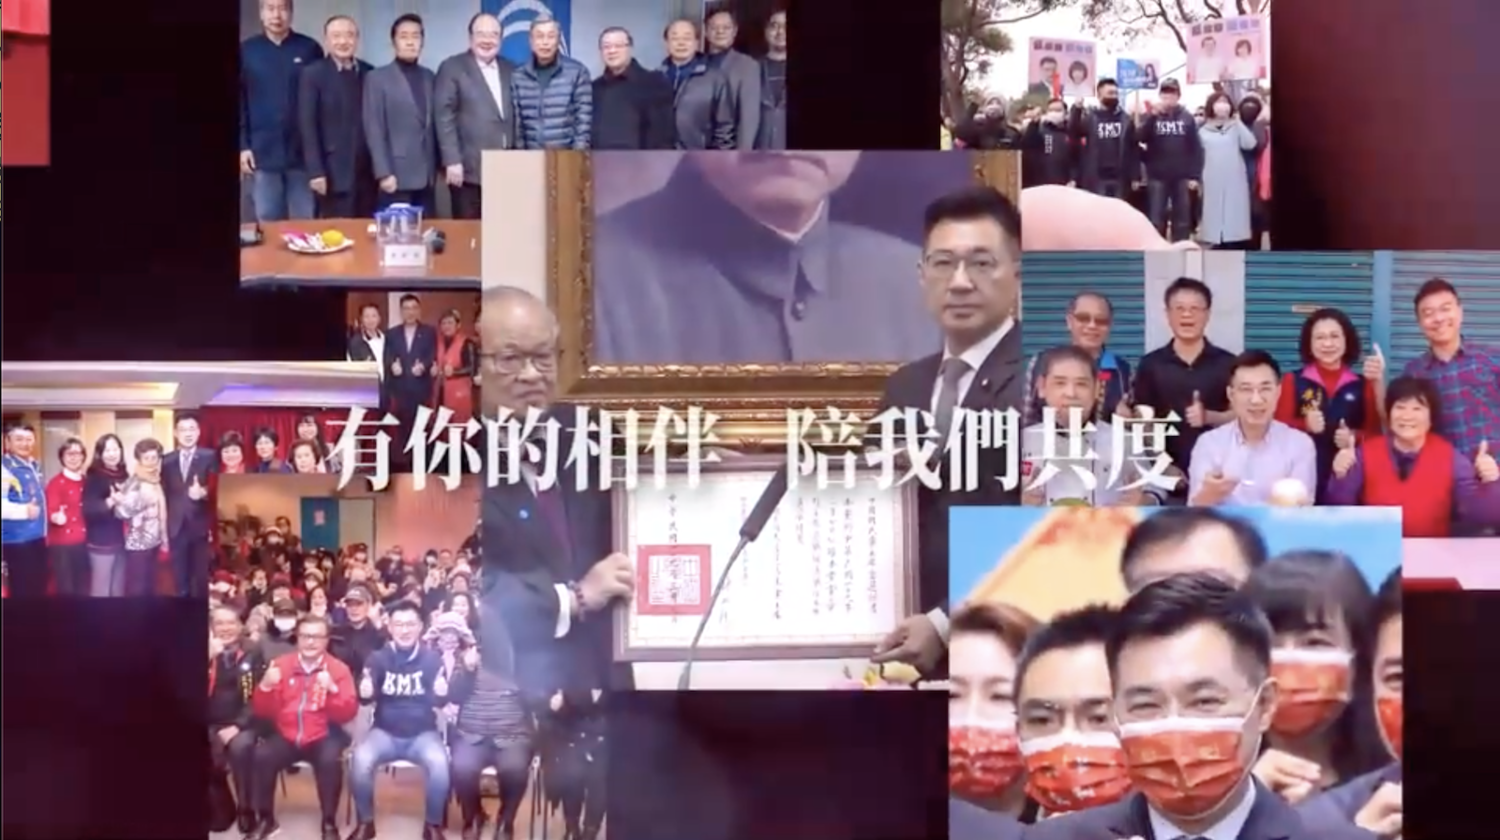 當選國民黨主席一週年 江啟臣透過影片喊話「繼續破浪前行」 | 政治 |